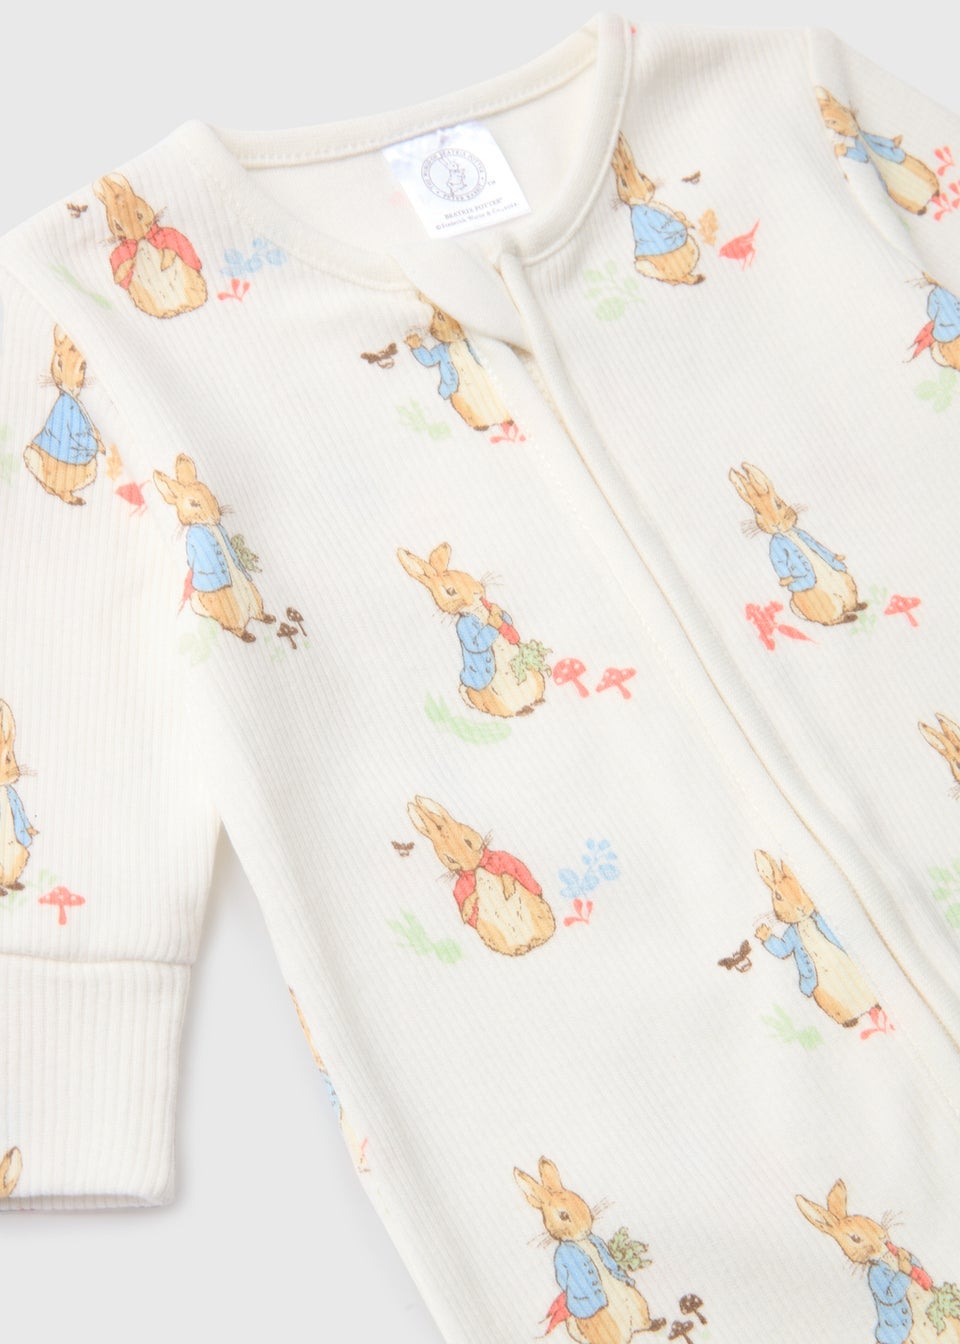 Peter Rabbit Clothing | Peter Rabbit Baby Clothes - Matalan